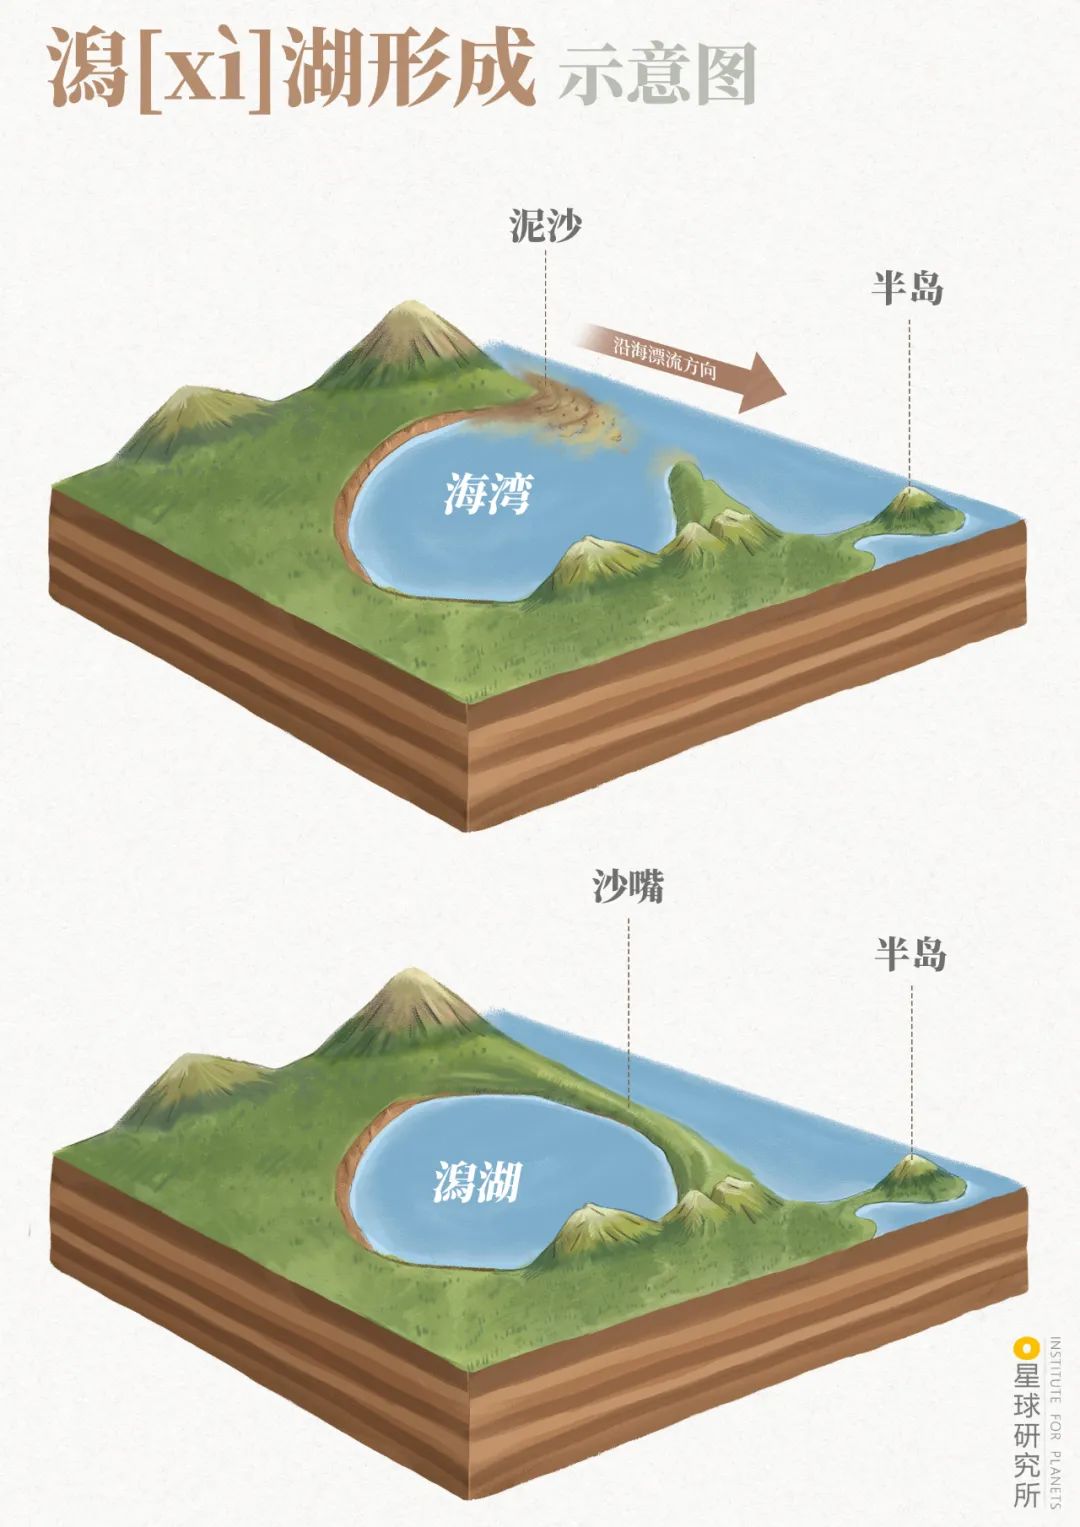 ▼(潟[xì]湖形成示意;制图@赵榜/星球研究所)也称潟湖则为海成湖形成